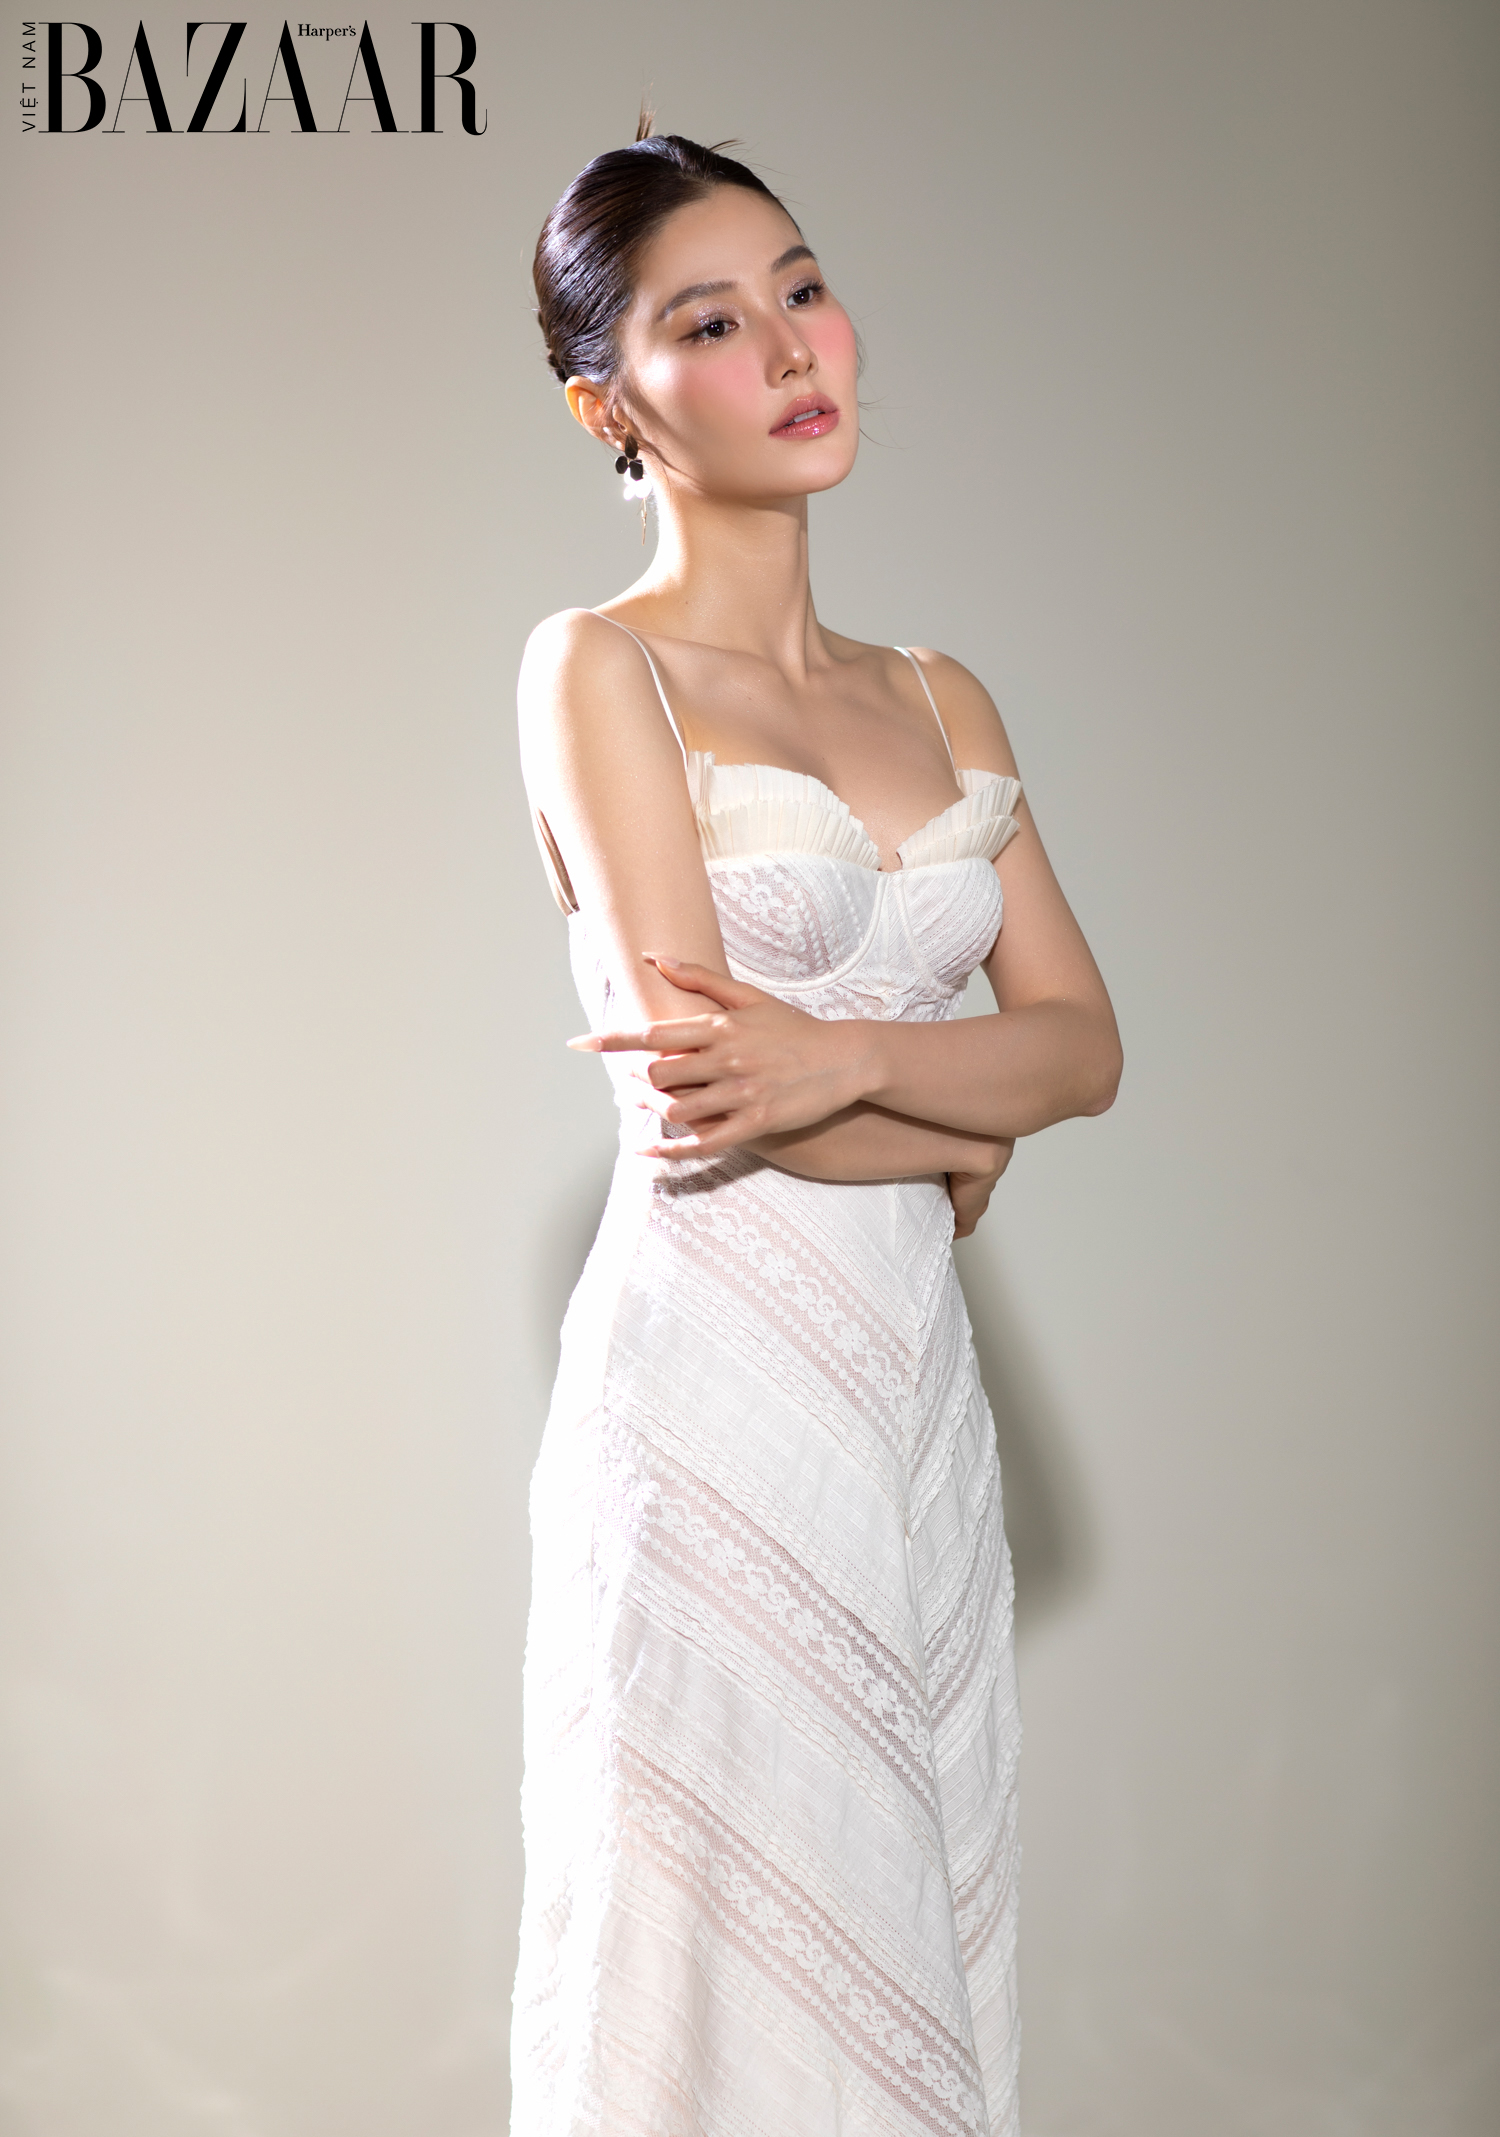 Harper's Bazaar_Diễm my 9x gợi ý trang phục màu trắng mùa hè Elpis_4